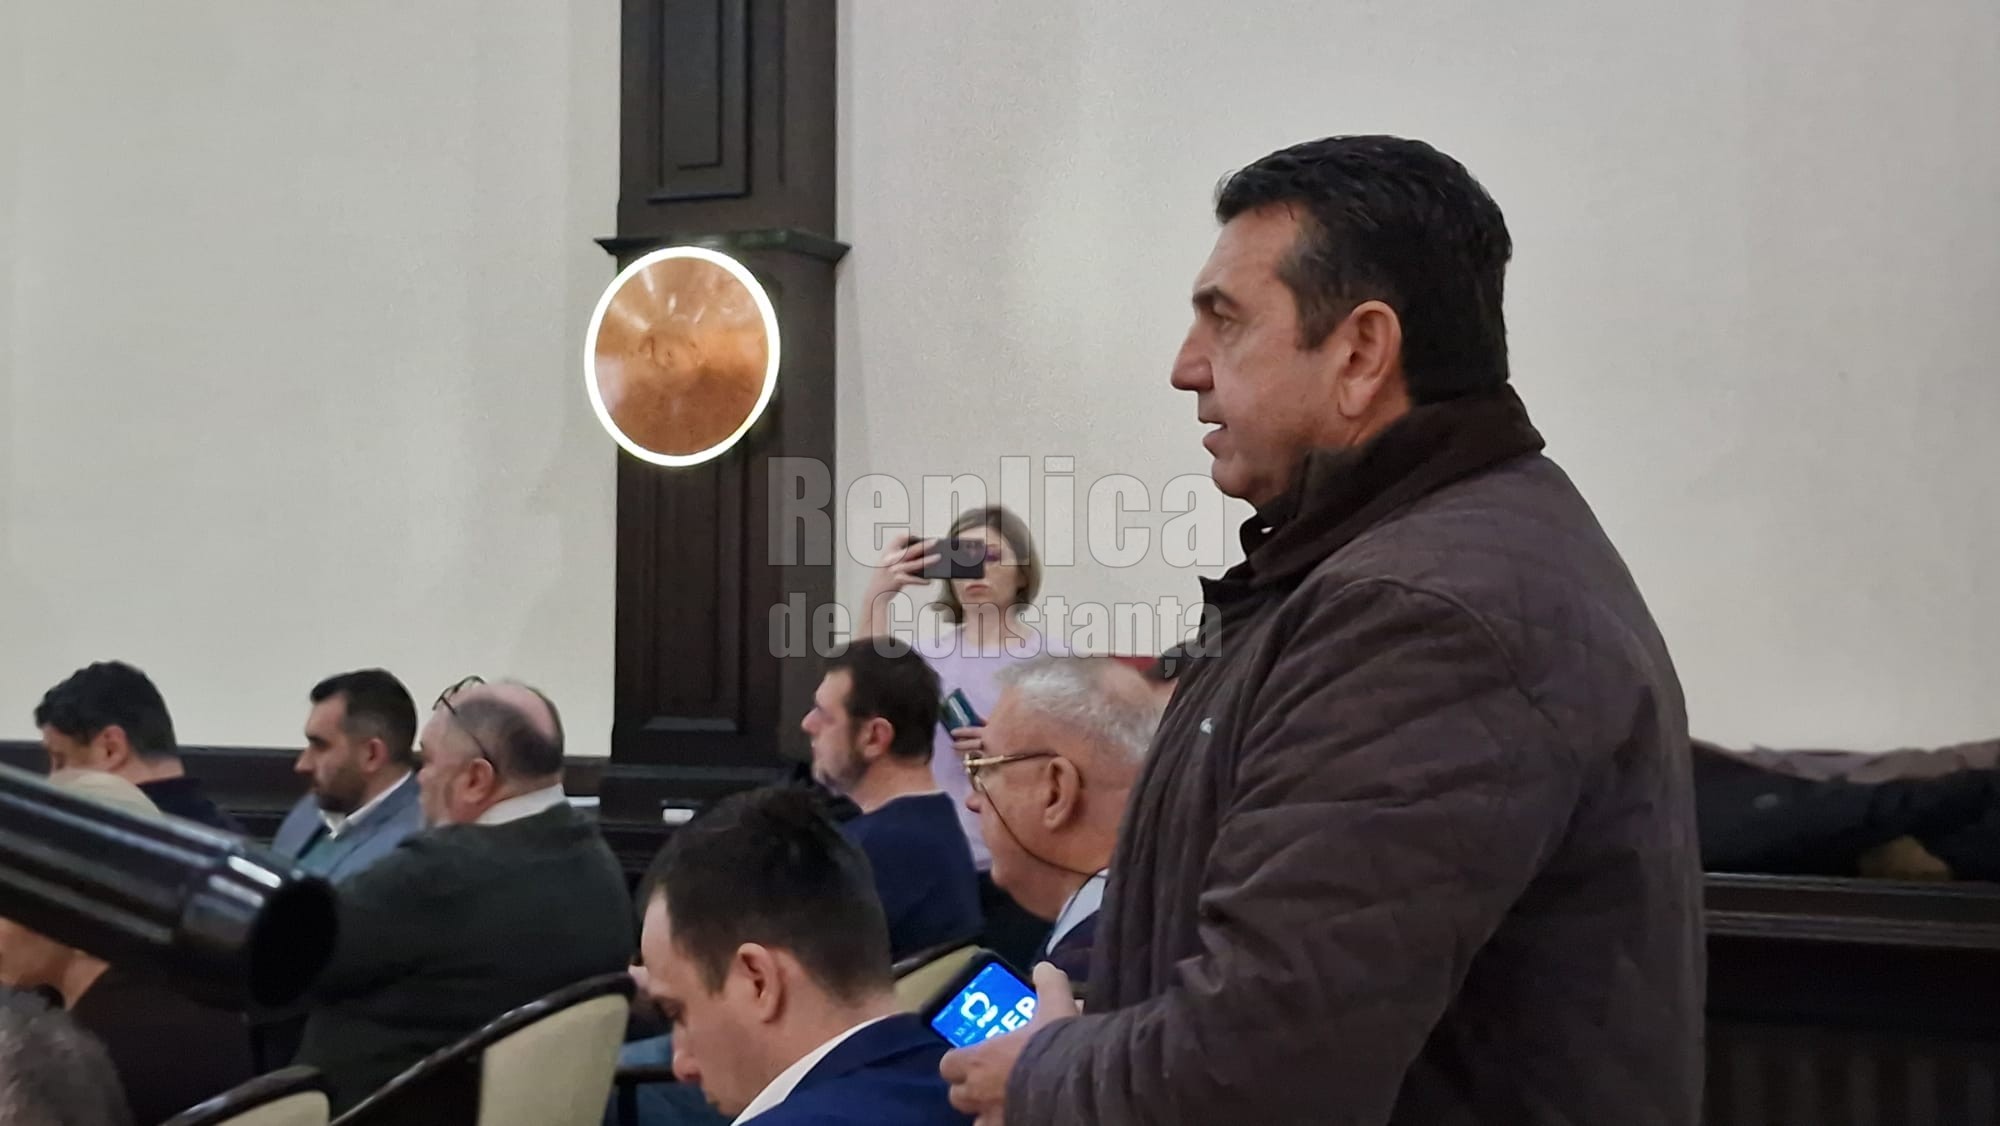 Claudiu Palaz s-a umflat in pene la sedinta de Consiliu Judetean. Video